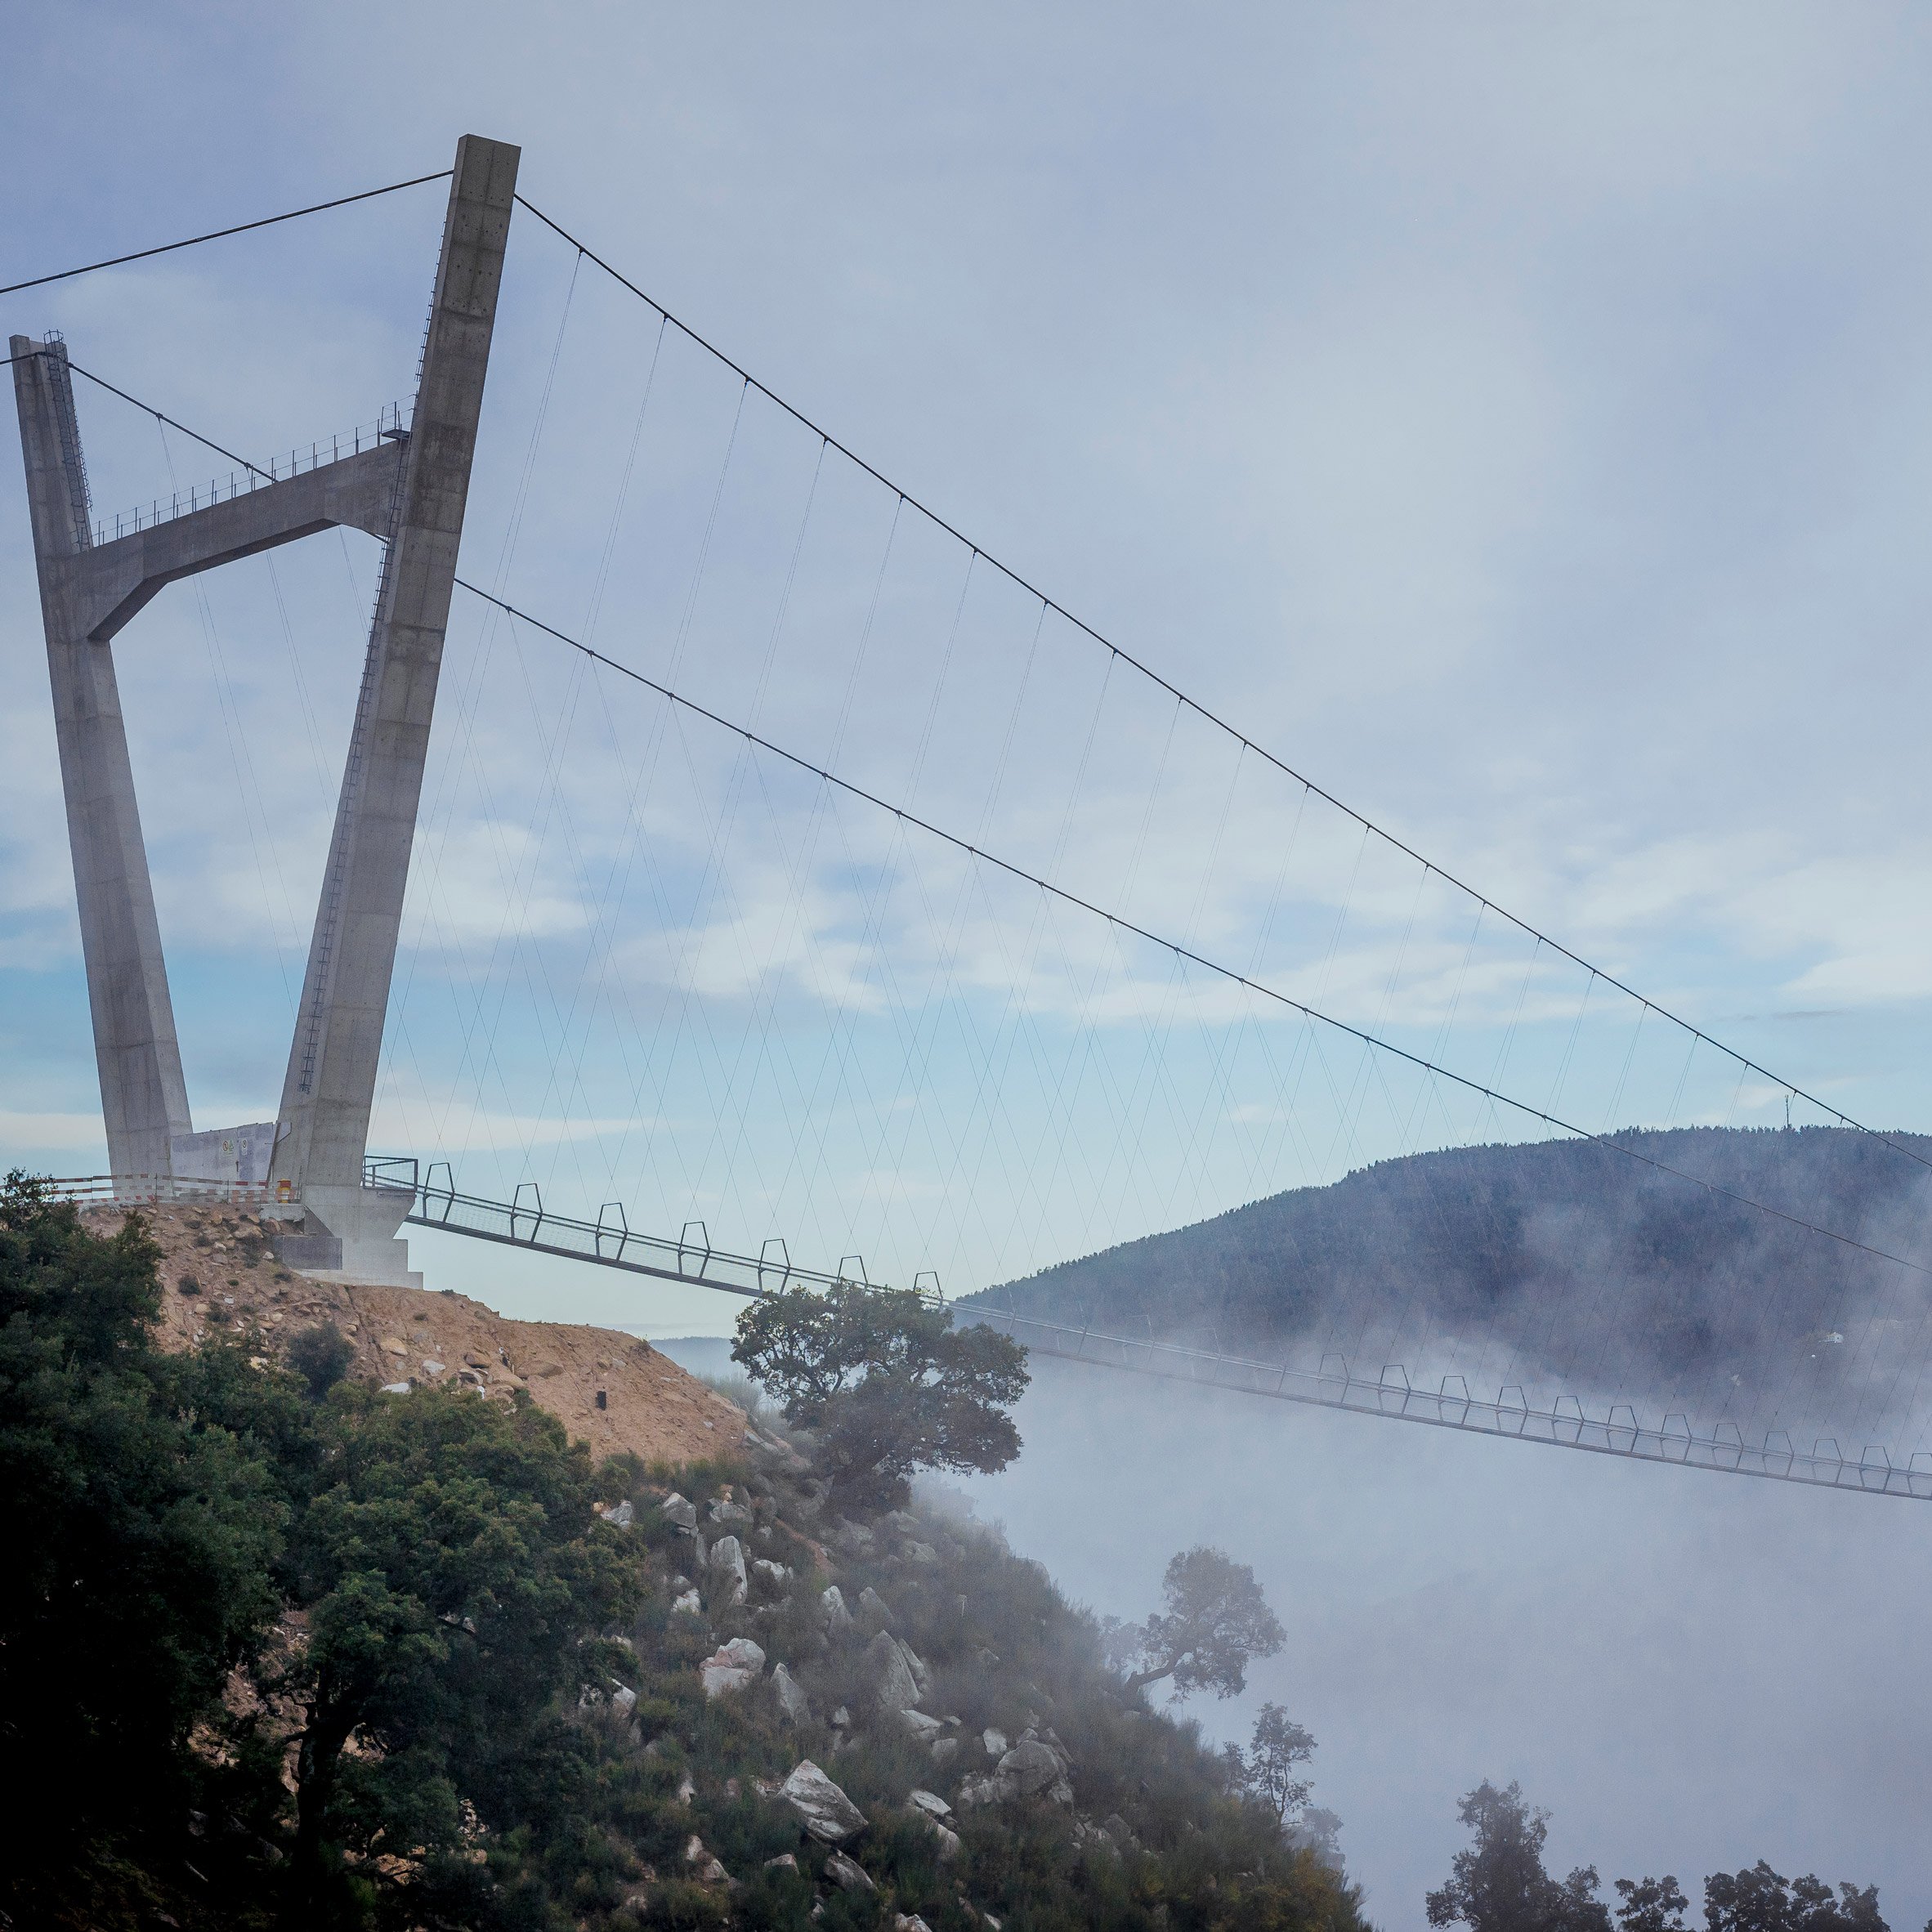 516 Arouca is the world's longest pedestrian suspension bridge